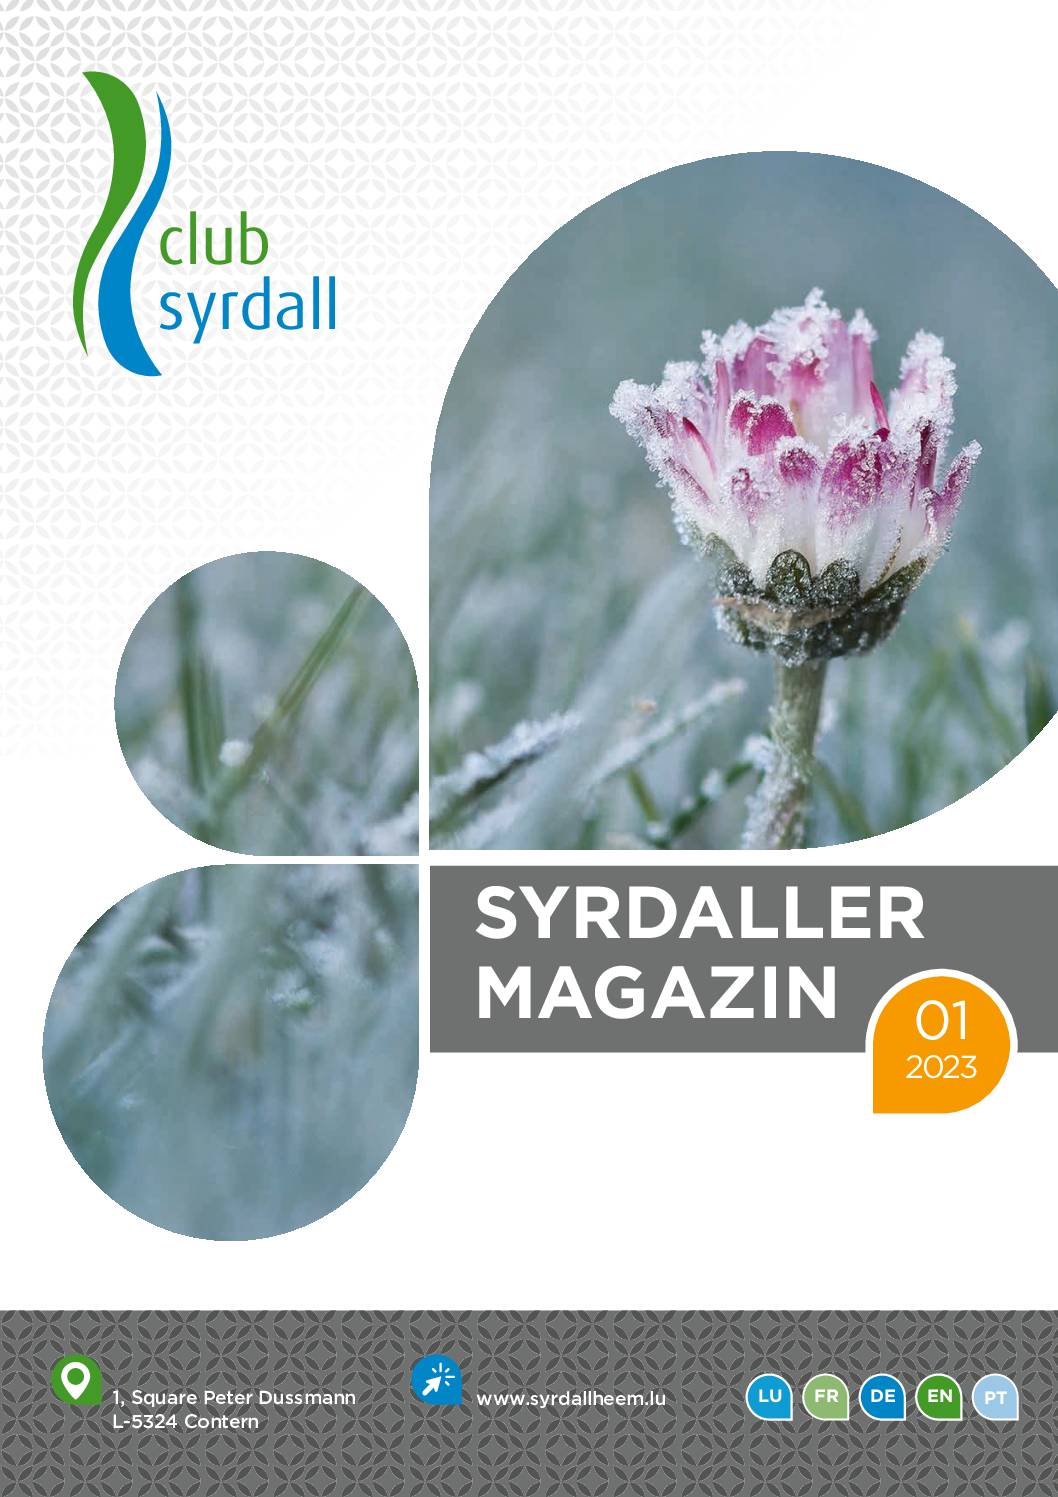 club syrdall Bro Syrdaller Magazin 012023 web 90190